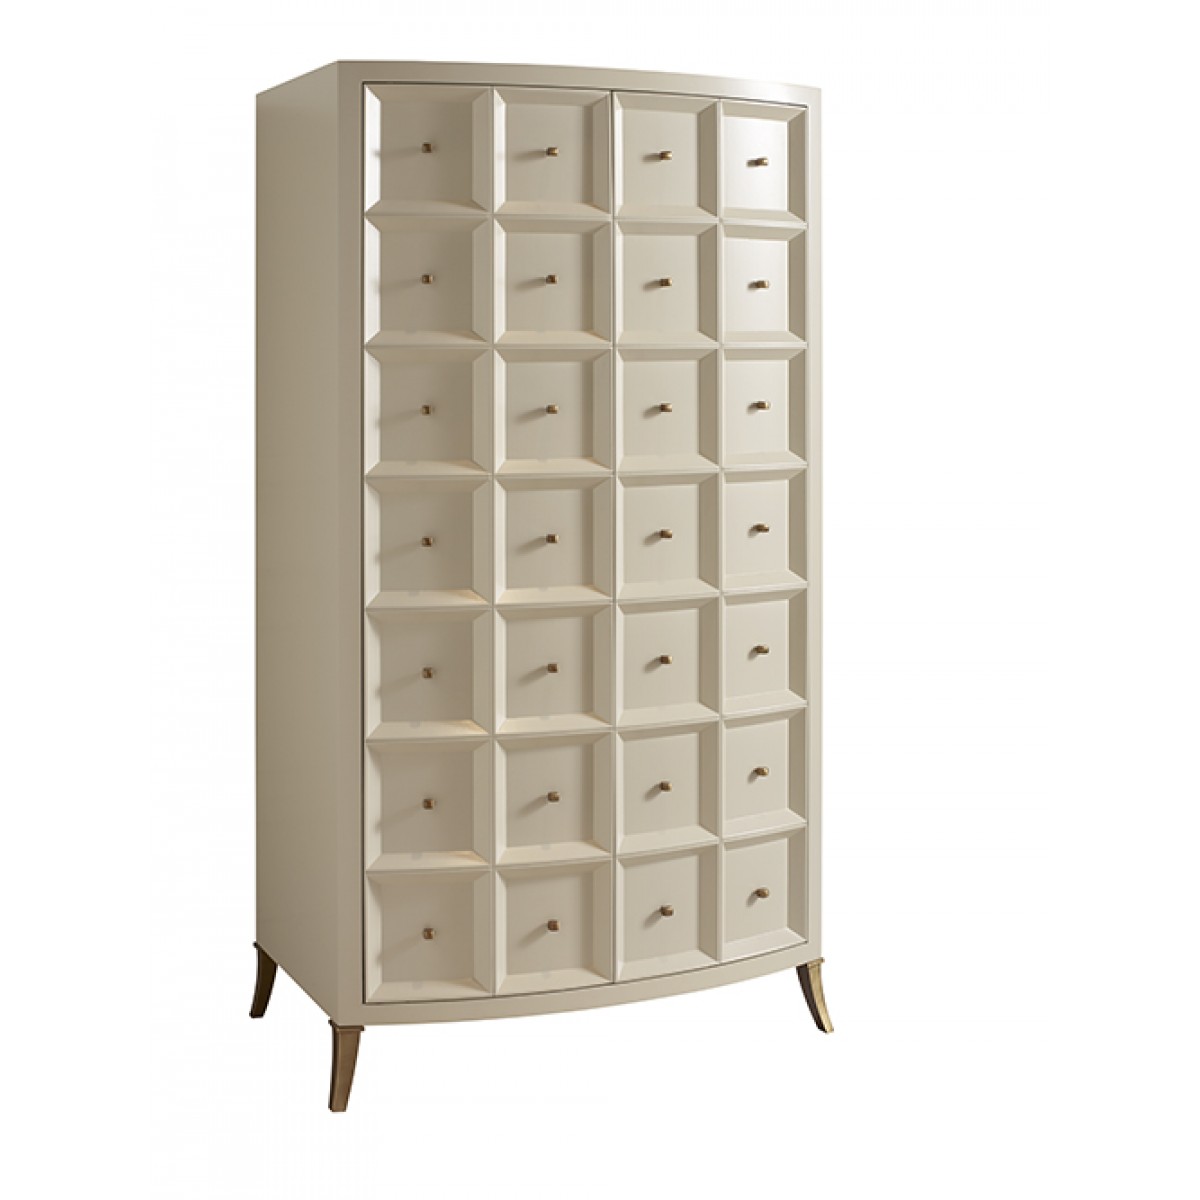 Барный шкаф в классическом стиле by Baker Furniture